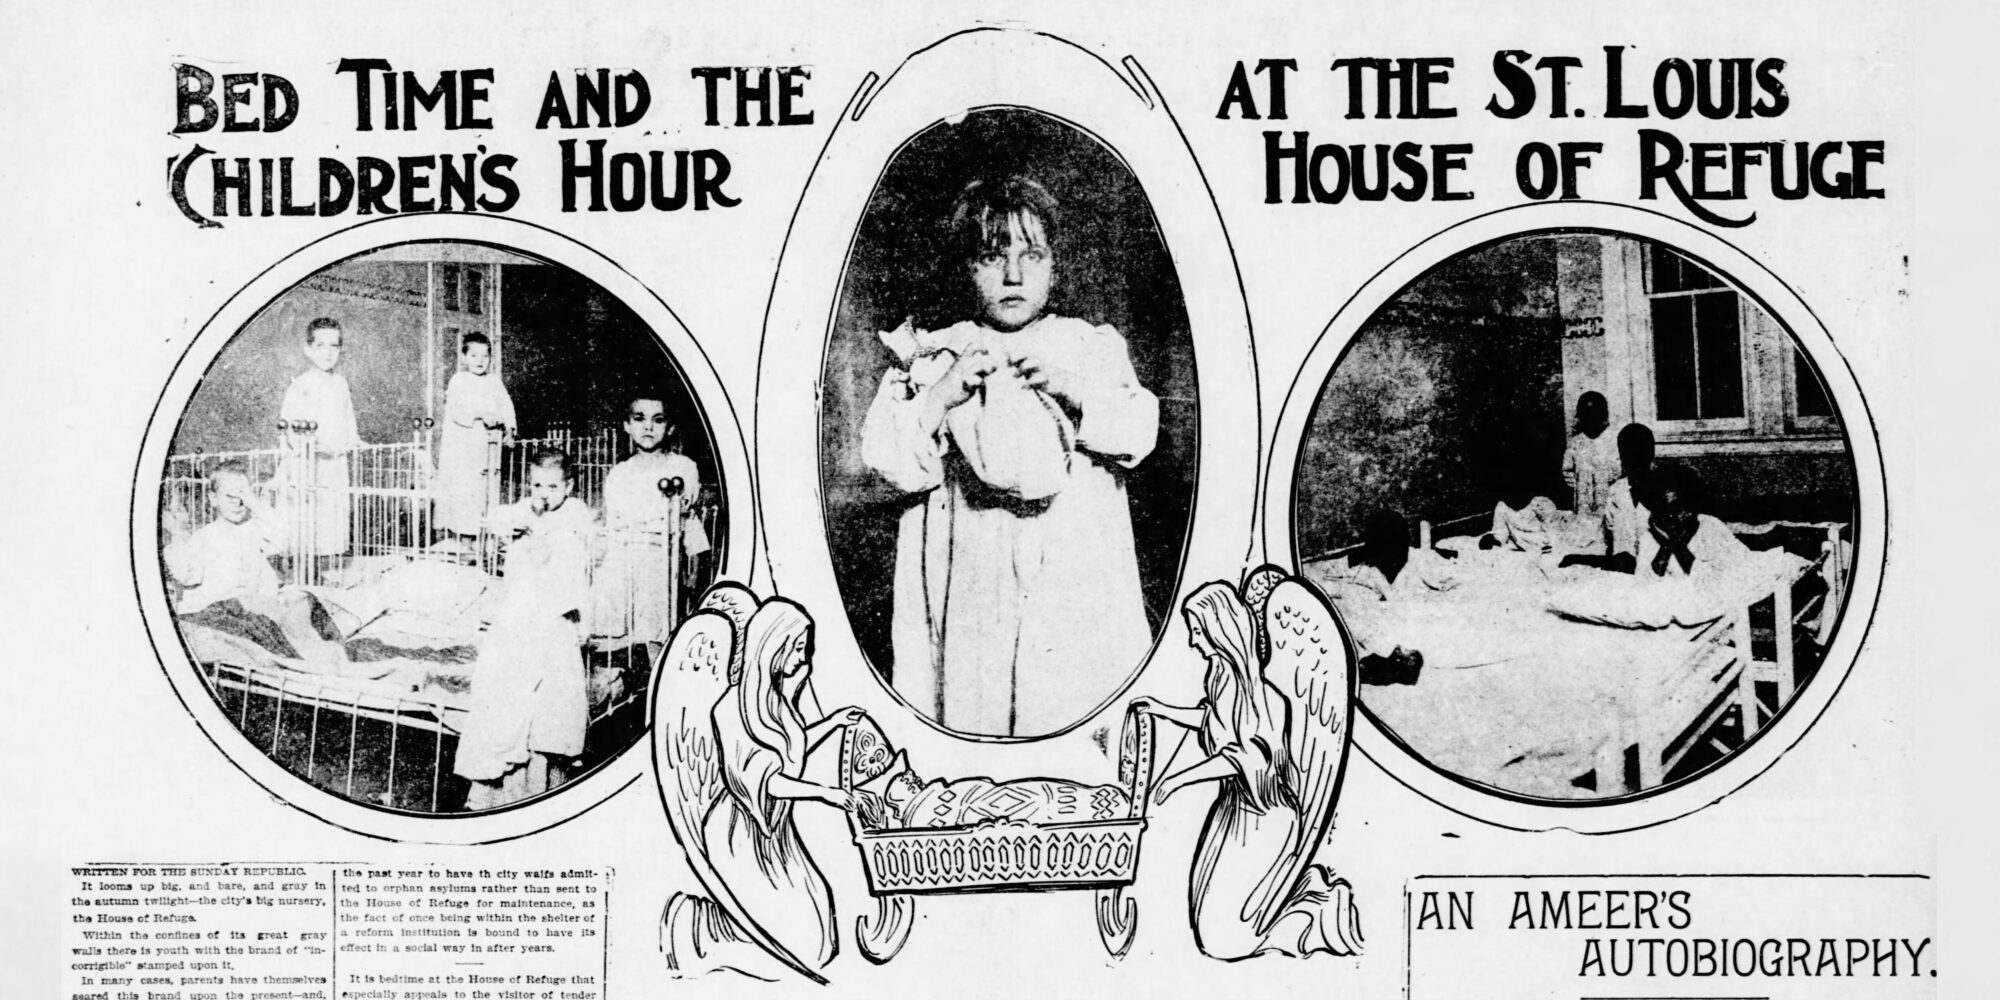 Coupure de l'édition du 3 novembre 1901 de la République de Saint-Louis intitulée « L'heure du coucher et l'heure des enfants à la maison de refuge de Saint-Louis ». L'image contient des vignettes d'enfants portant des chemises de nuit dans leurs lits et un dessin de deux anges berçant un berceau.